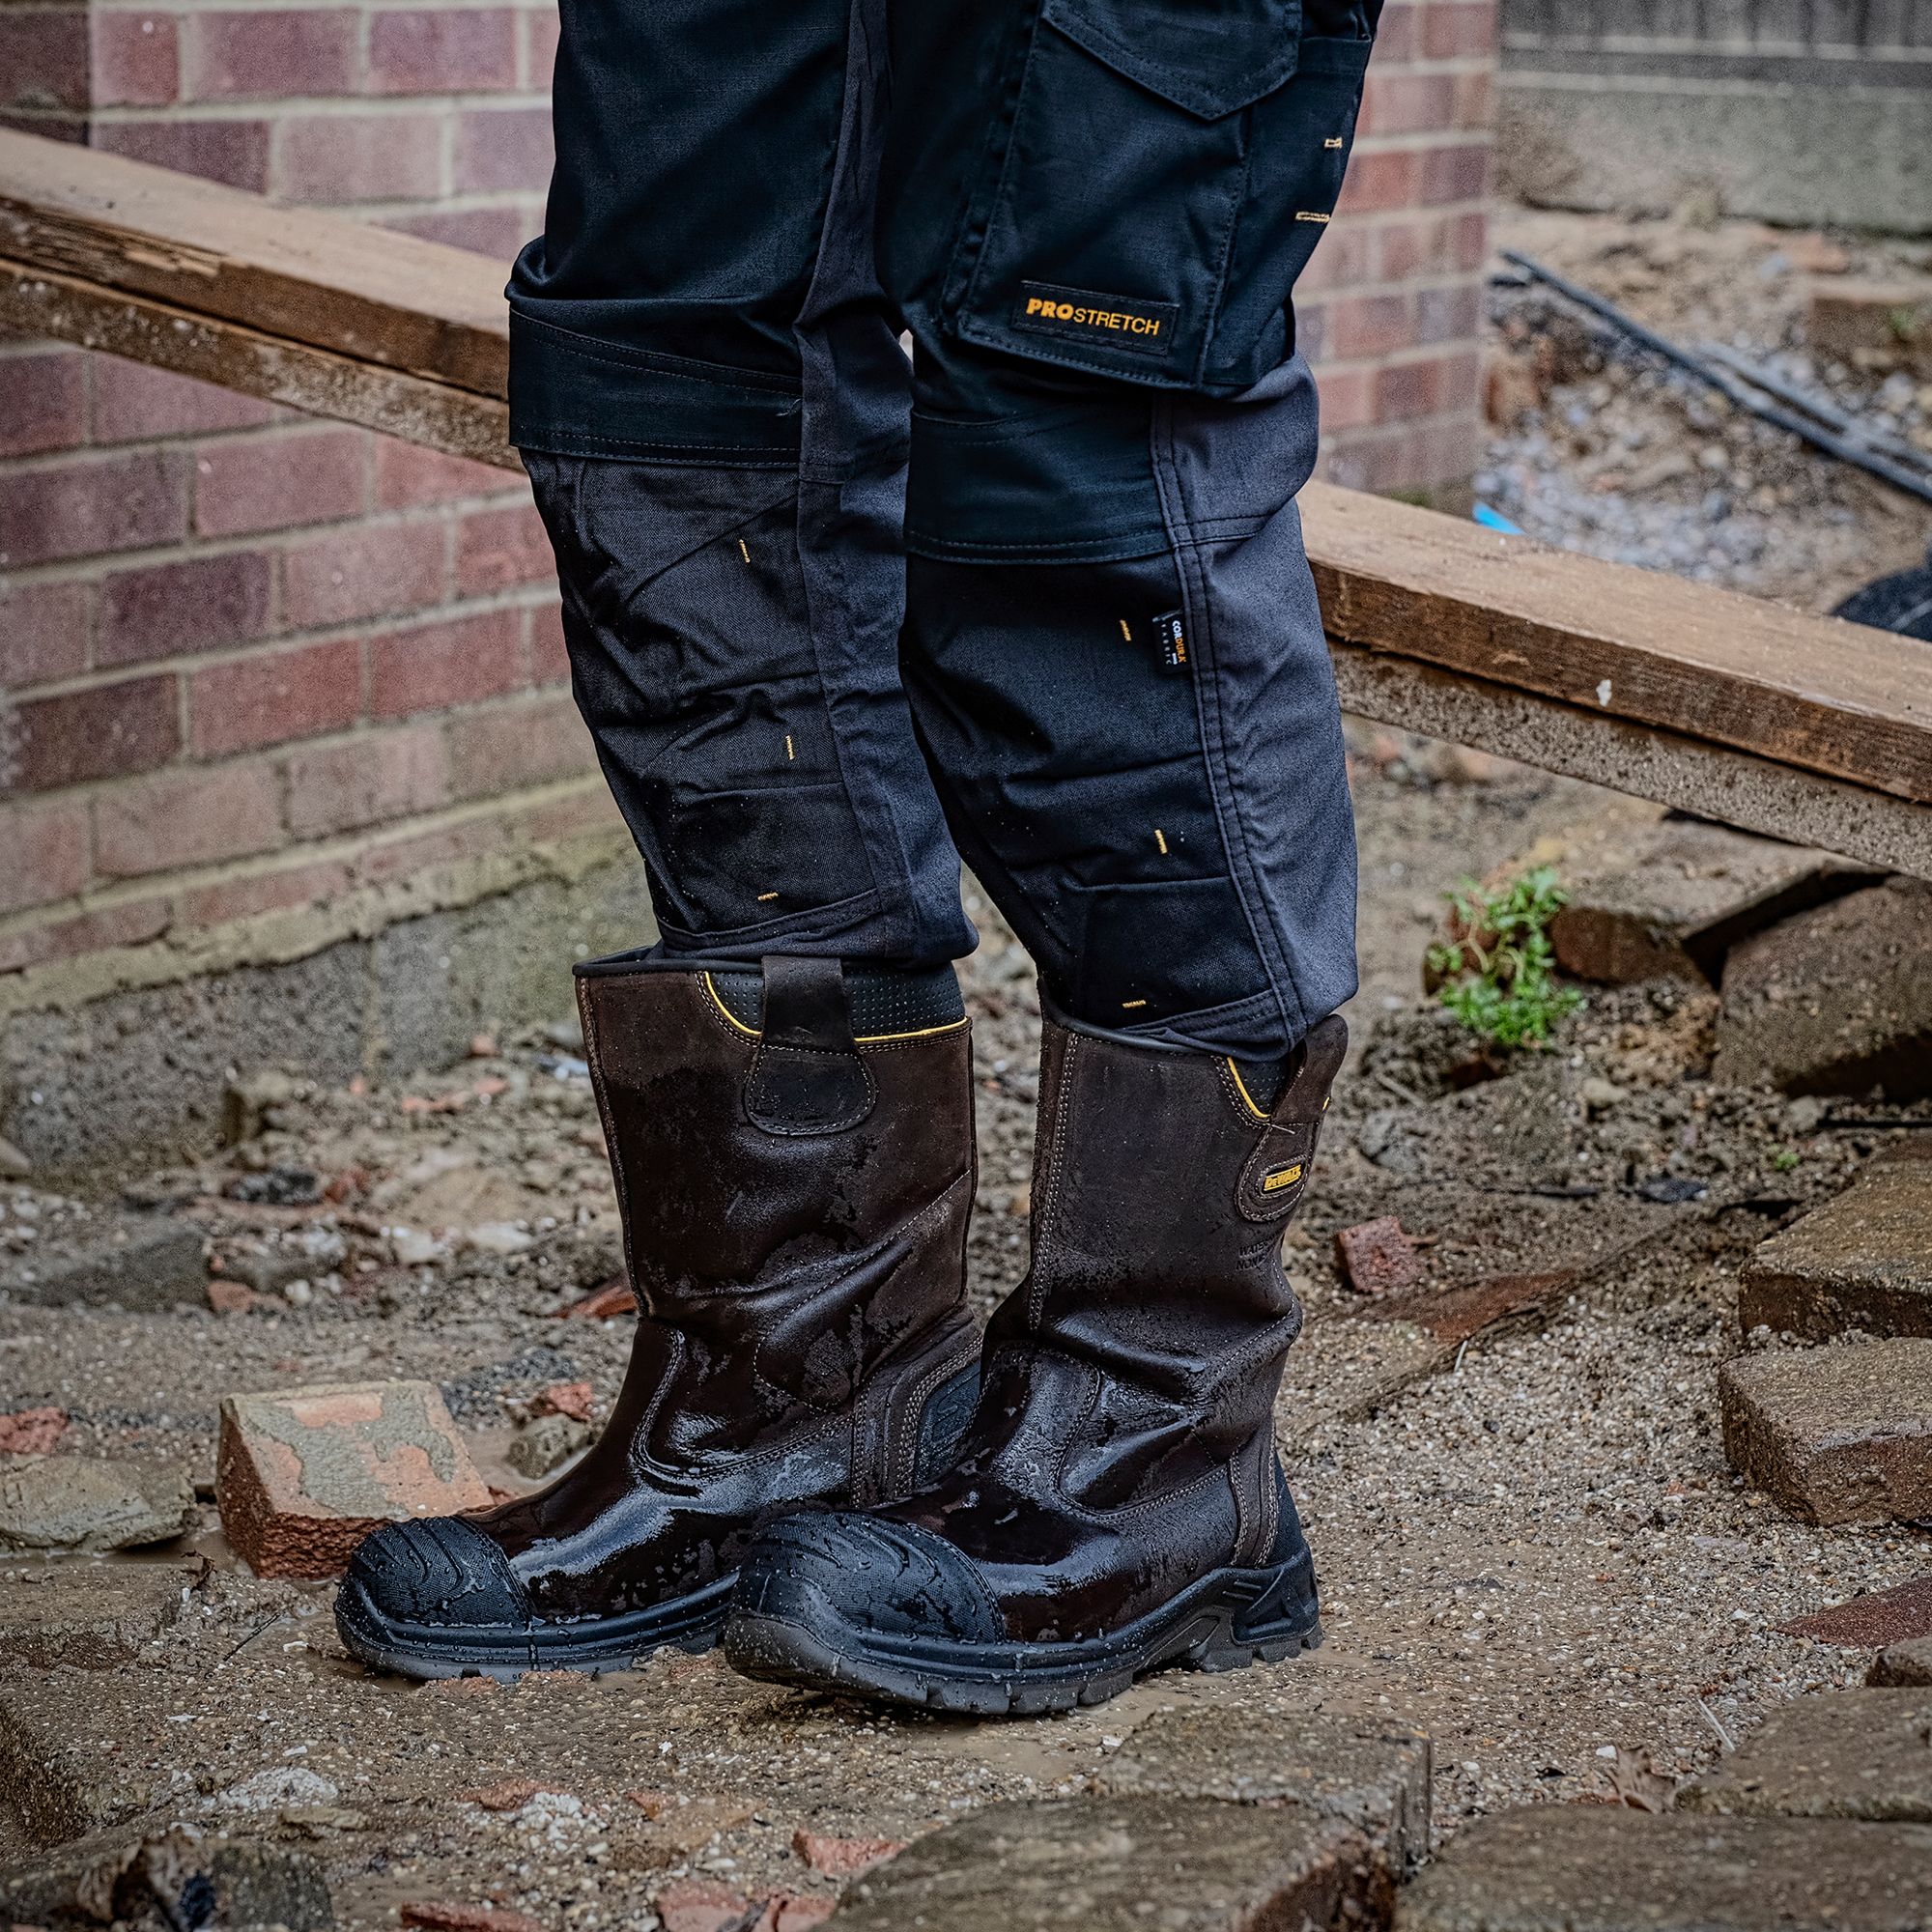 DeWalt Millington Brown Safety rigger boots, Size 11